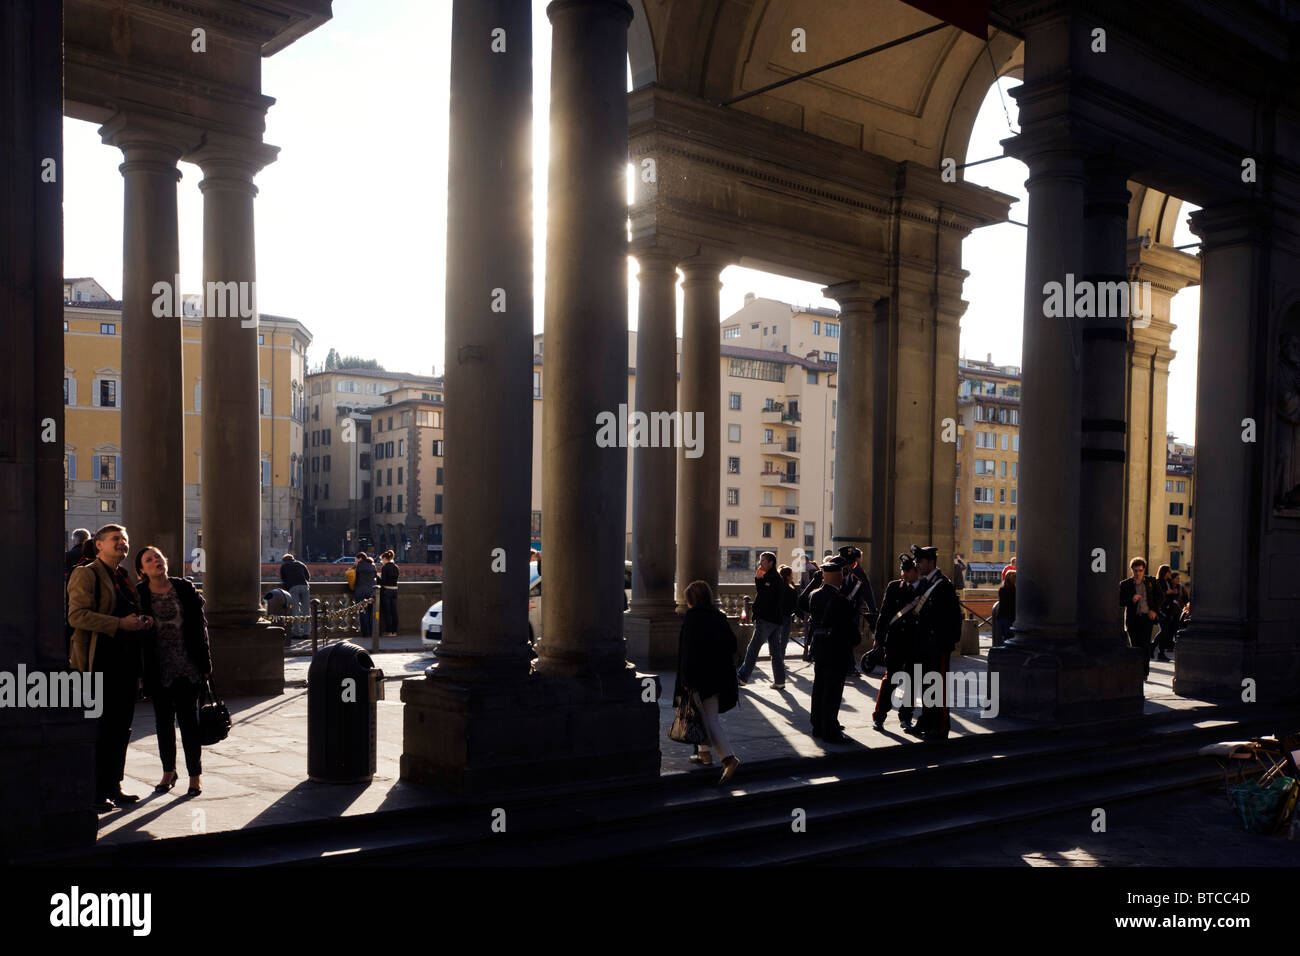 Touristen bewundern die Architektur und Carabinieri Offiziere Patrouille in Florenz Piazza Degli Uffizi. Stockfoto